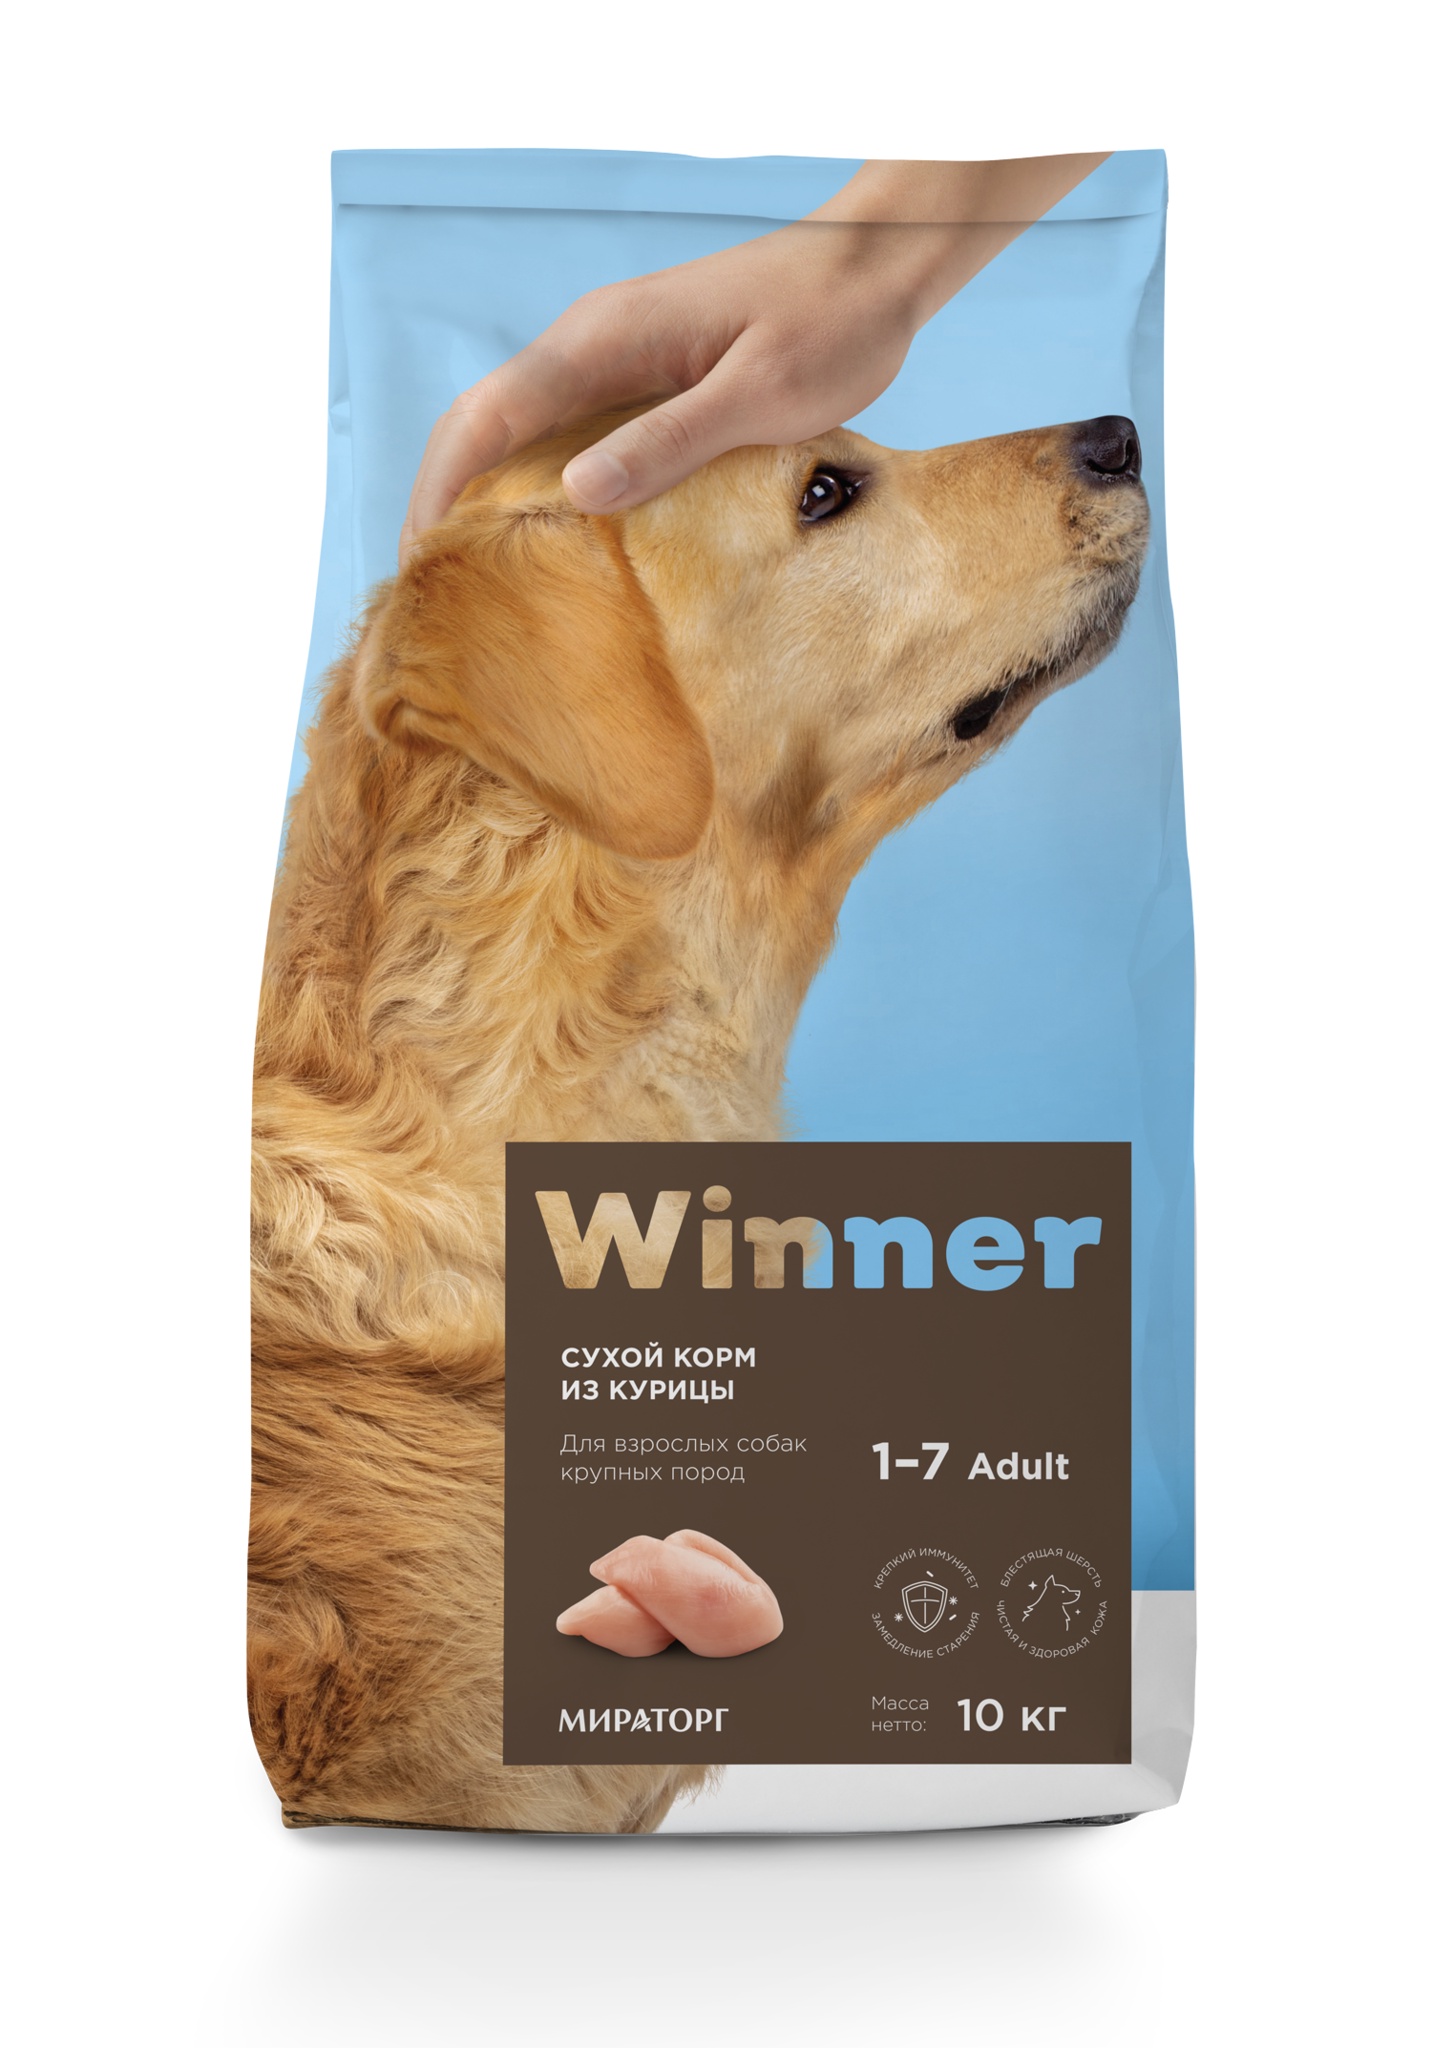 фото Сухой корм для взрослых собак крупных пород winner, с курицей, 10 кг